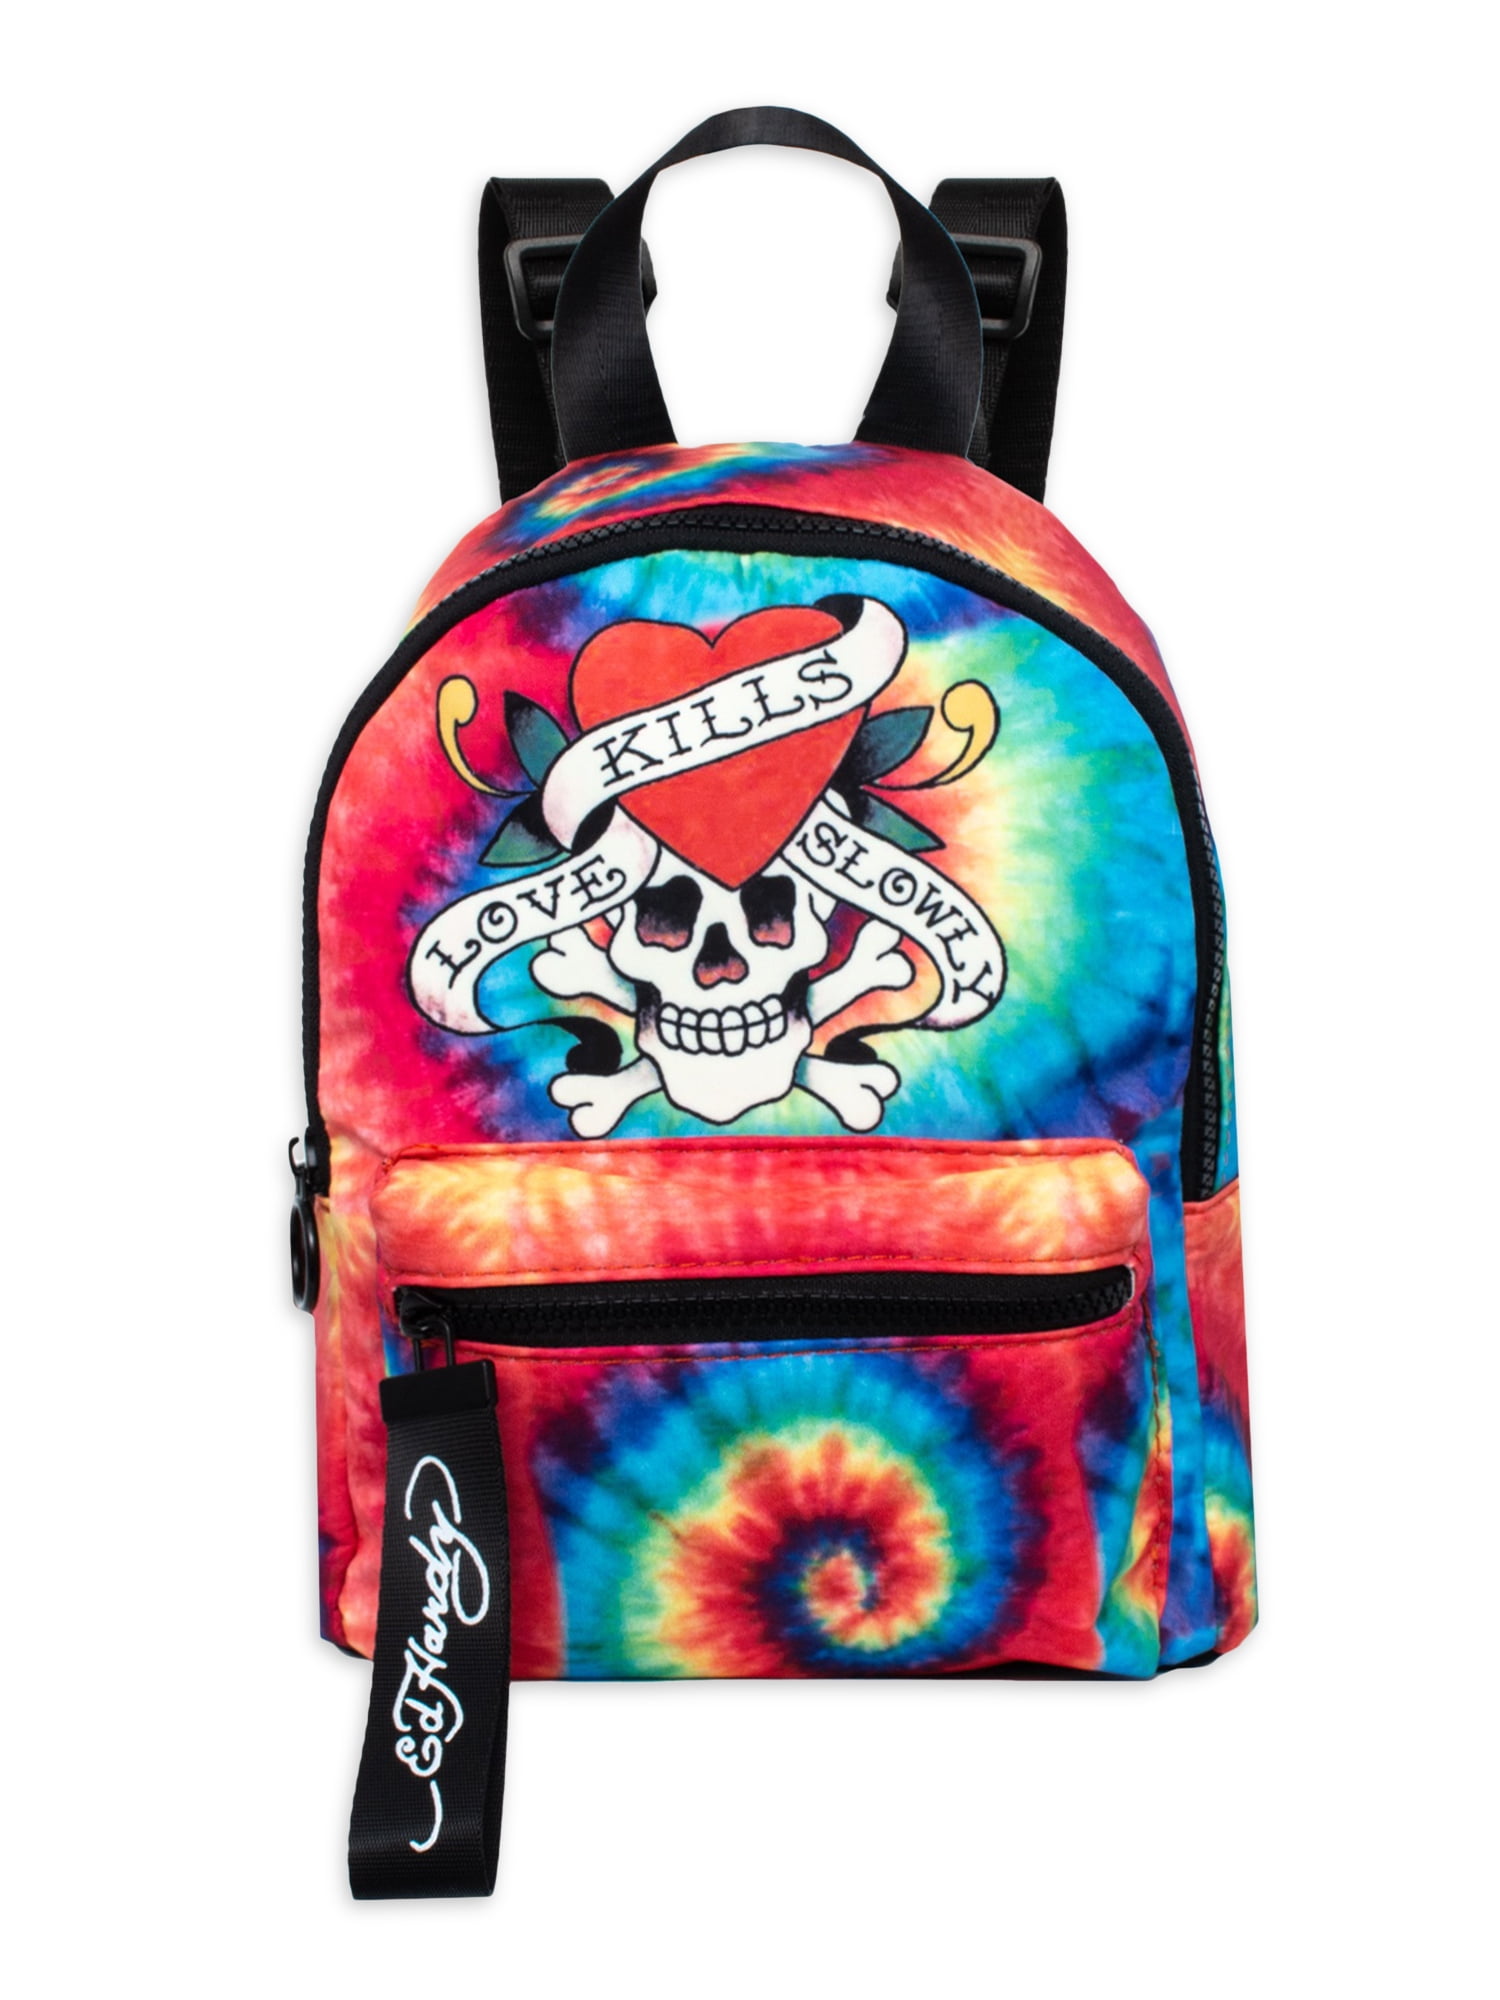 Skull Backpack Rucksack Travel Gym School Bag Daypack Back Packs Bag College Boy 